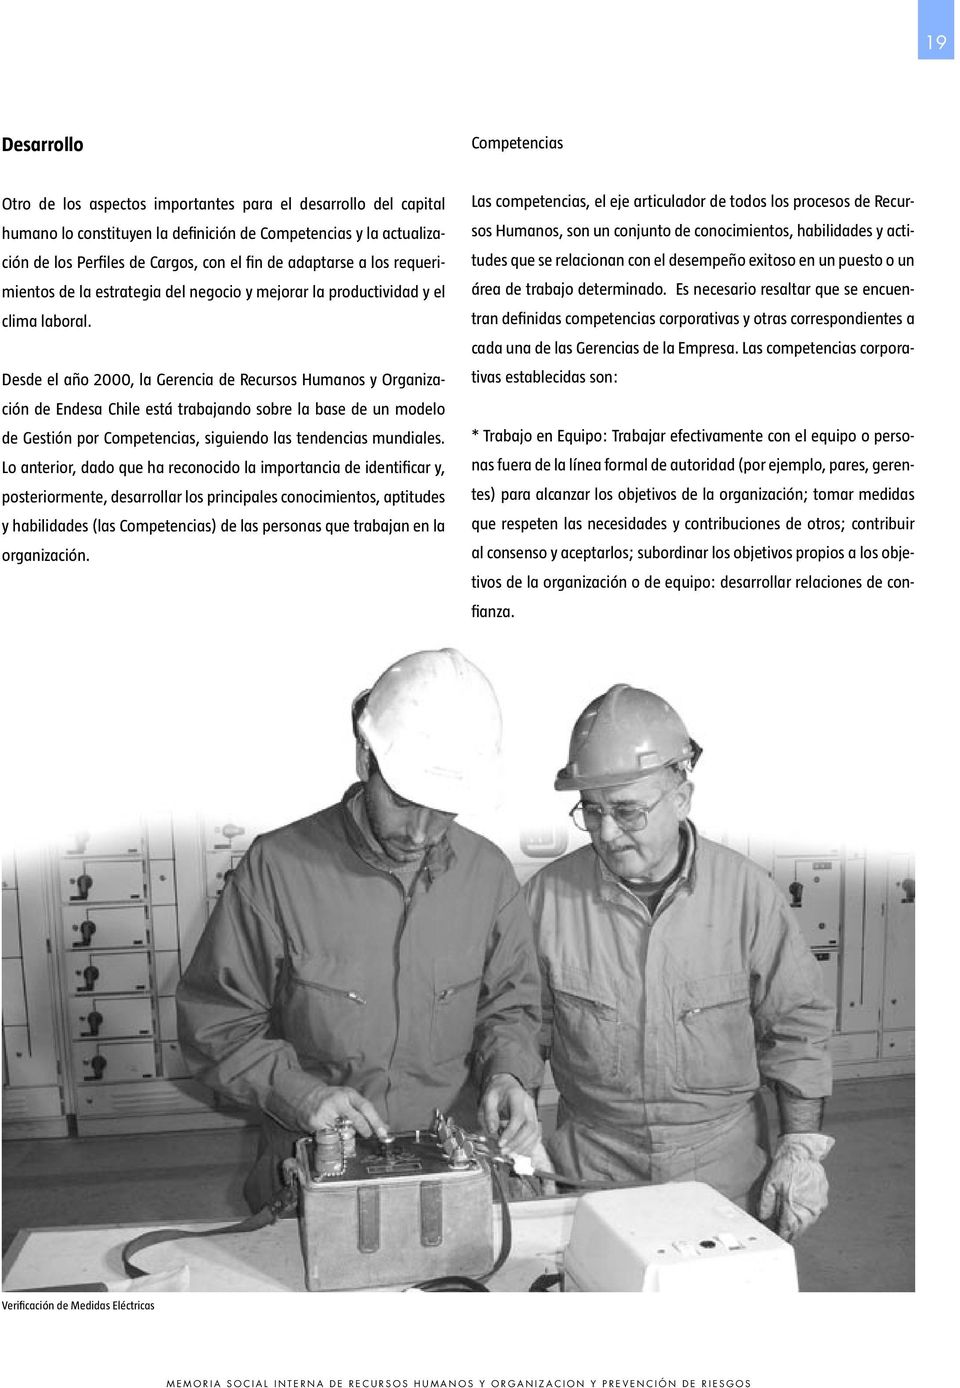 Desde el año 2000, la Gerencia de Recursos Humanos y Organización de Endesa Chile está trabajando sobre la base de un modelo de Gestión por Competencias, siguiendo las tendencias mundiales.